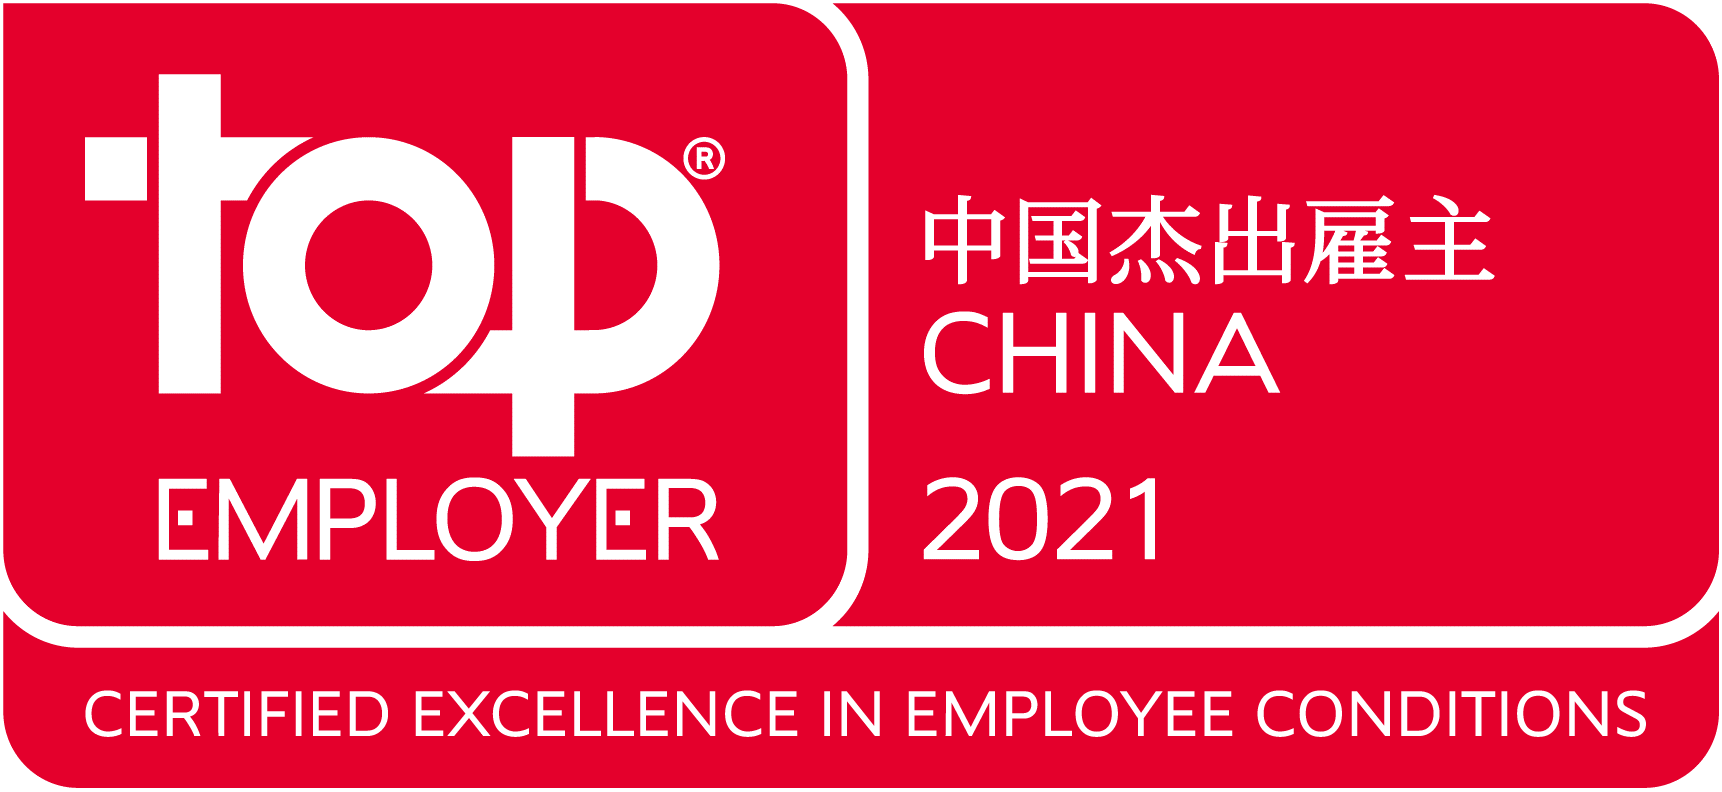 林德连续第七年获得“中国杰出雇主”认证